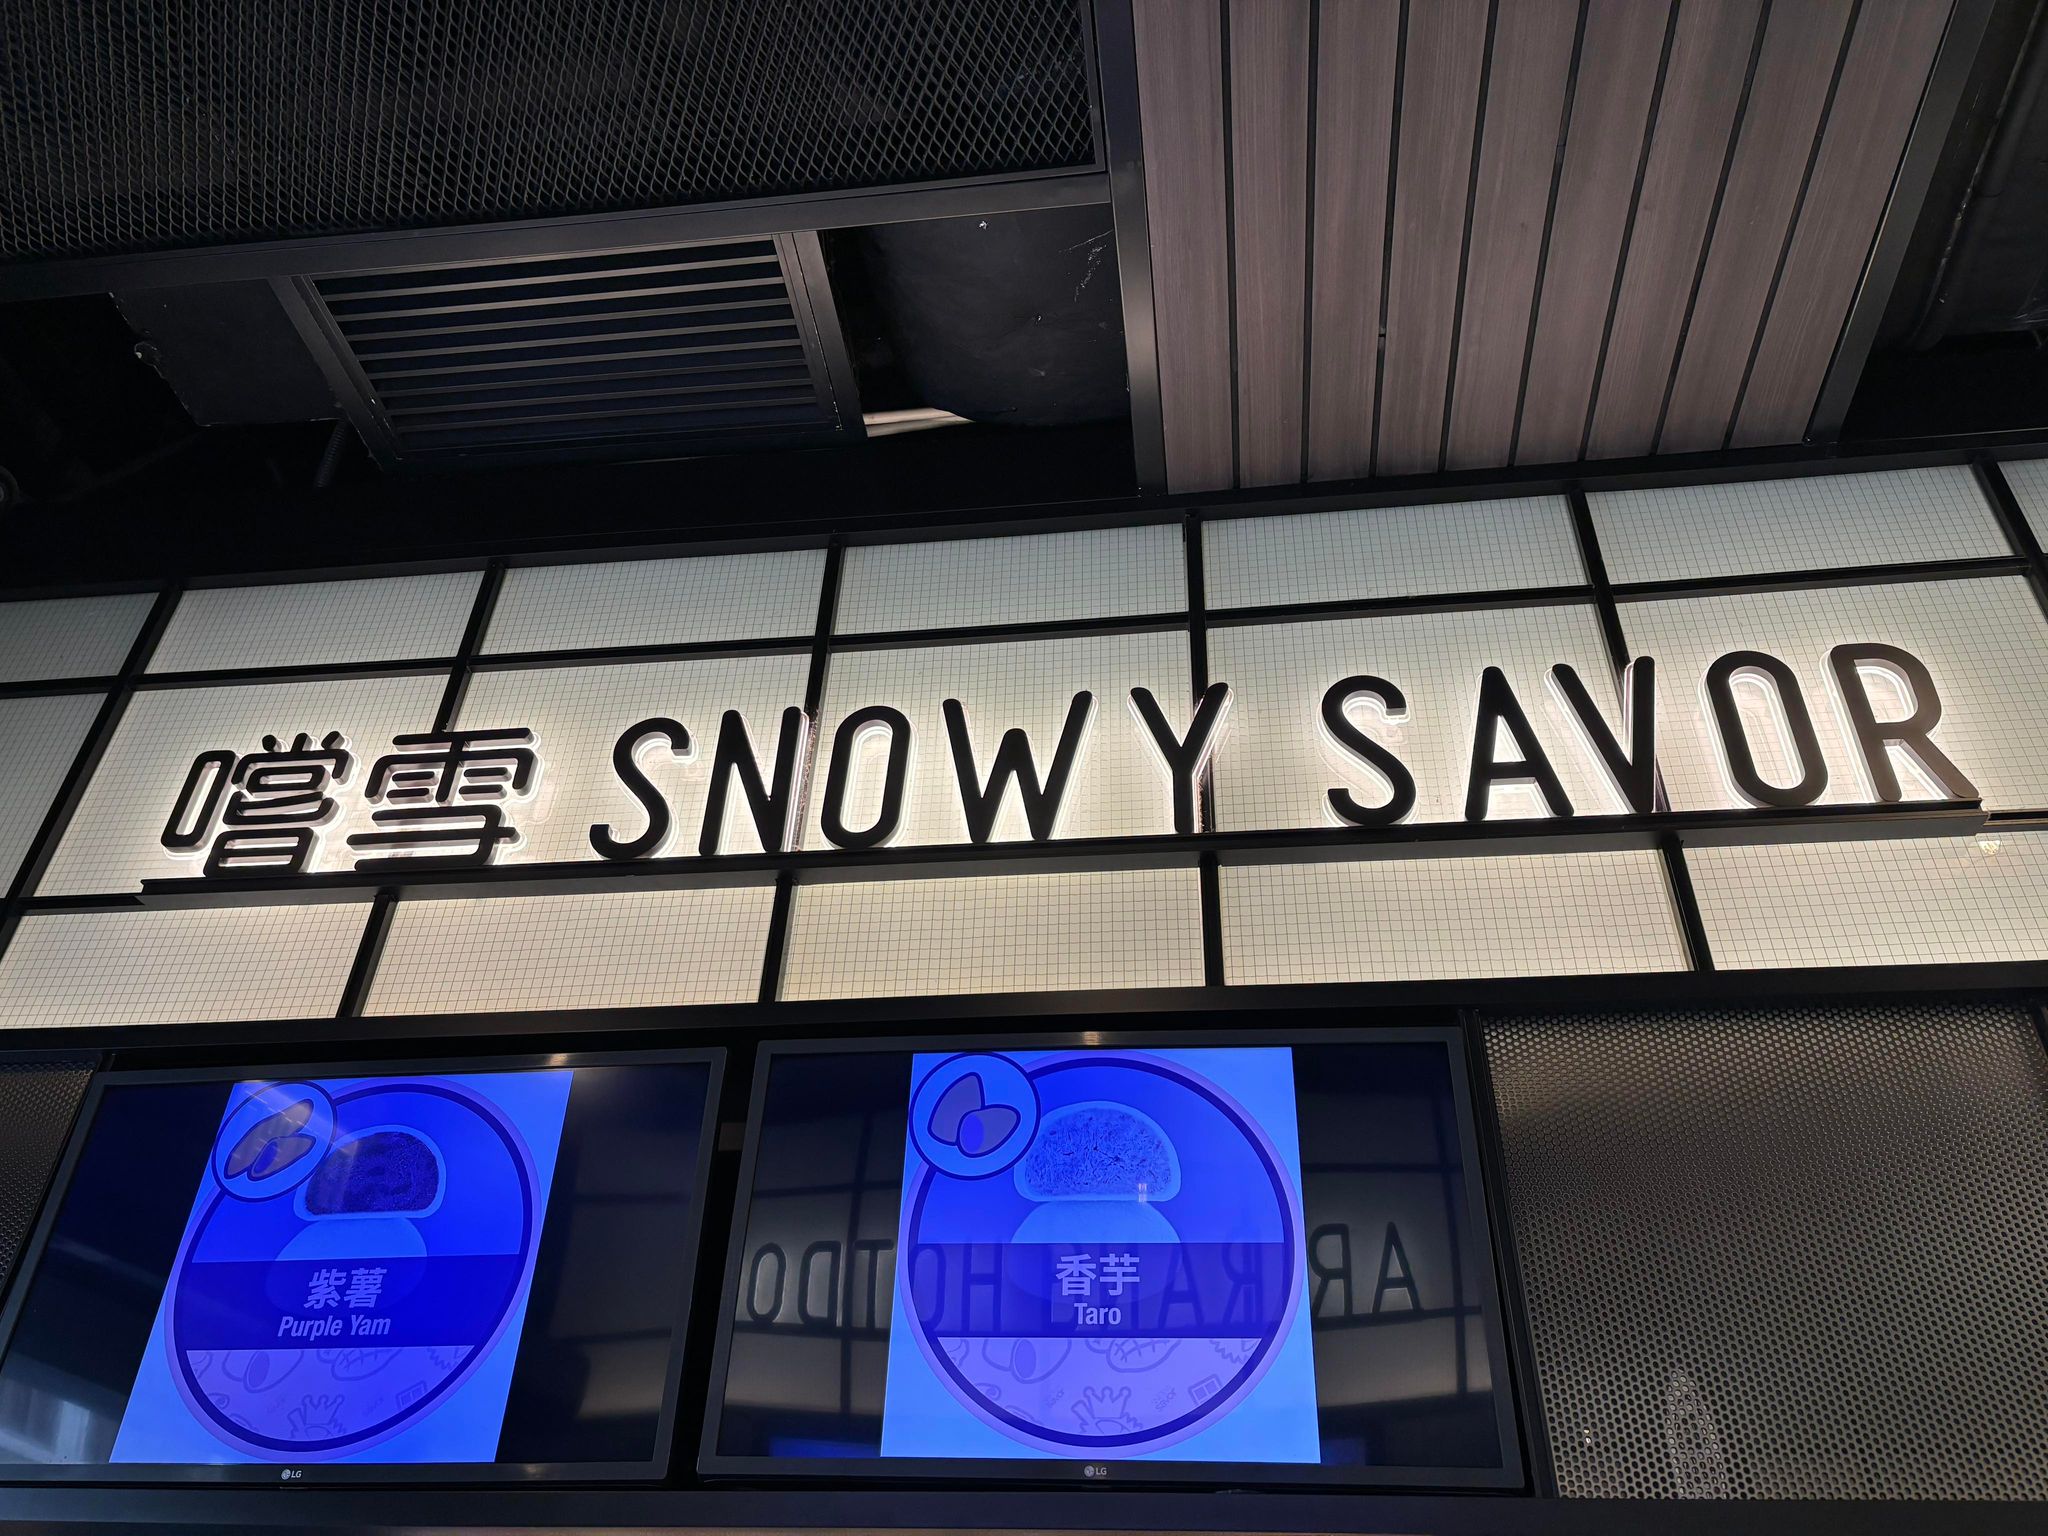 「香港糖水店資訊網」 嚐雪 (亨環‧天后) Snowy Savor (Park Aura)